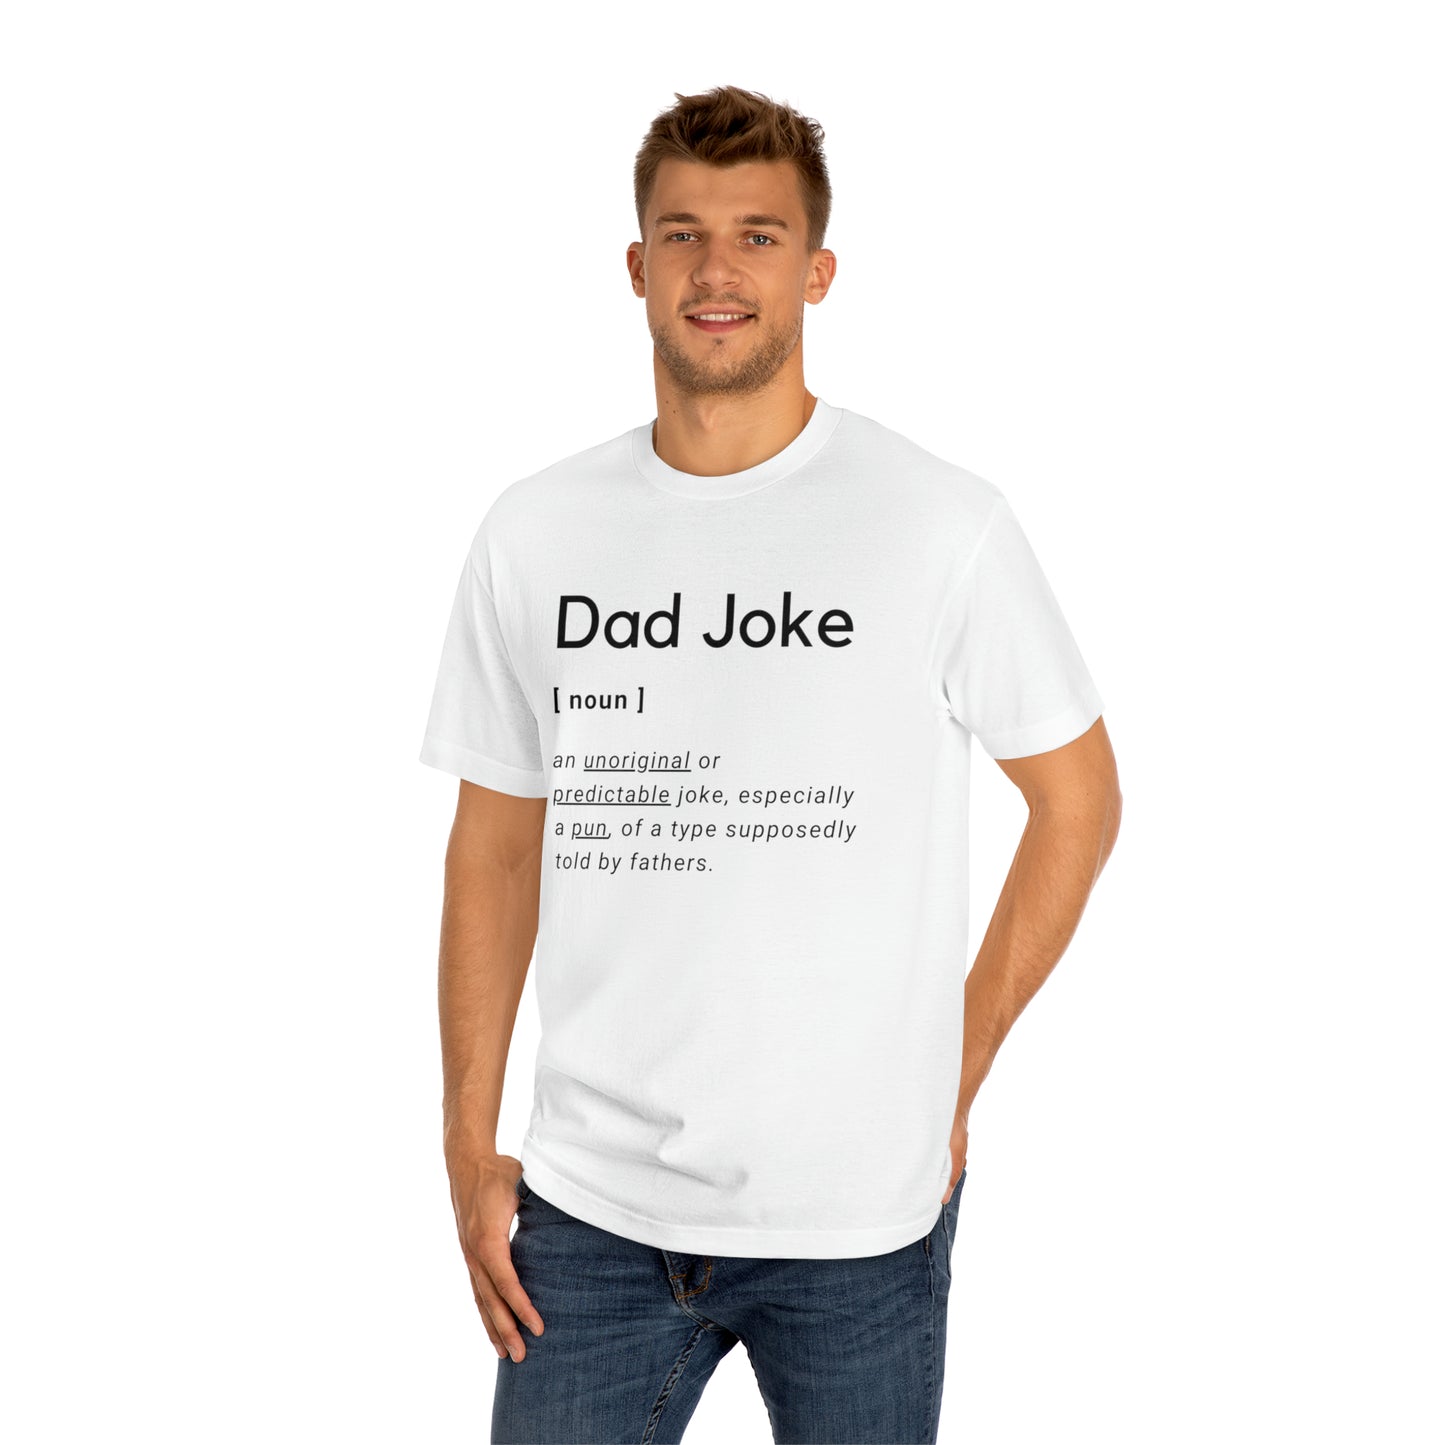 Dad Joke Definition